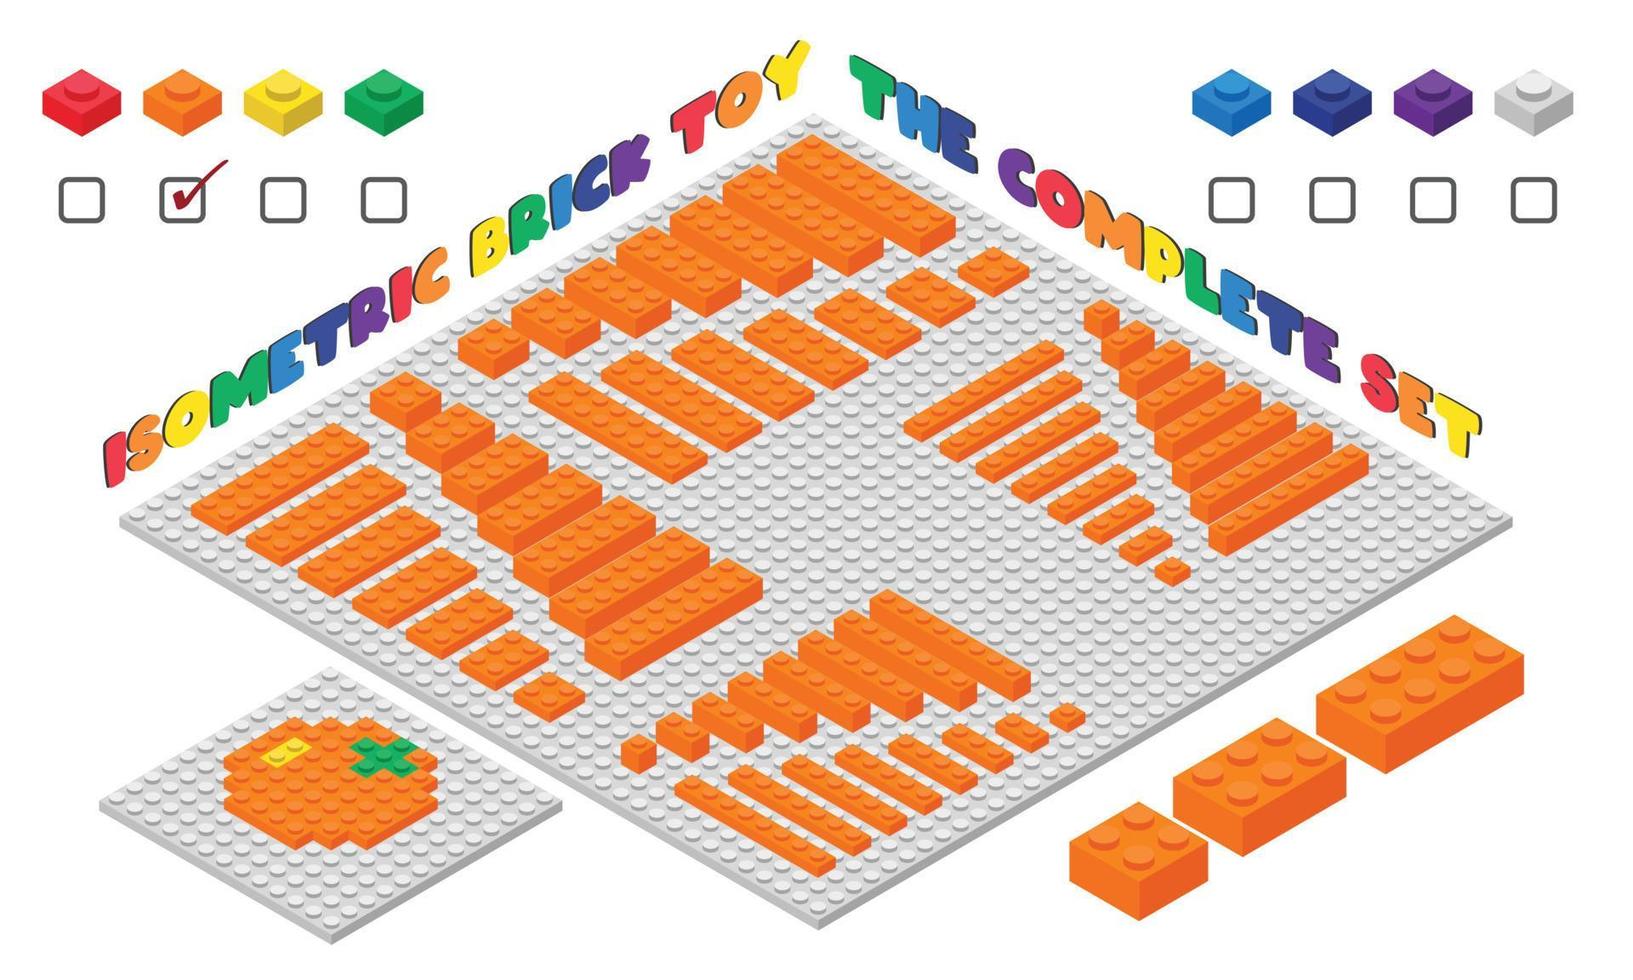 el conjunto completo de estilo isométrico de juguete de ladrillo para niños 3d naranja. Ilustración de vector de juguete de bloques de construcción de plástico aislado en blanco. diseño plano de juguete de ladrillo de construcción cuadrada. juego de juguetes de ladrillos de plástico